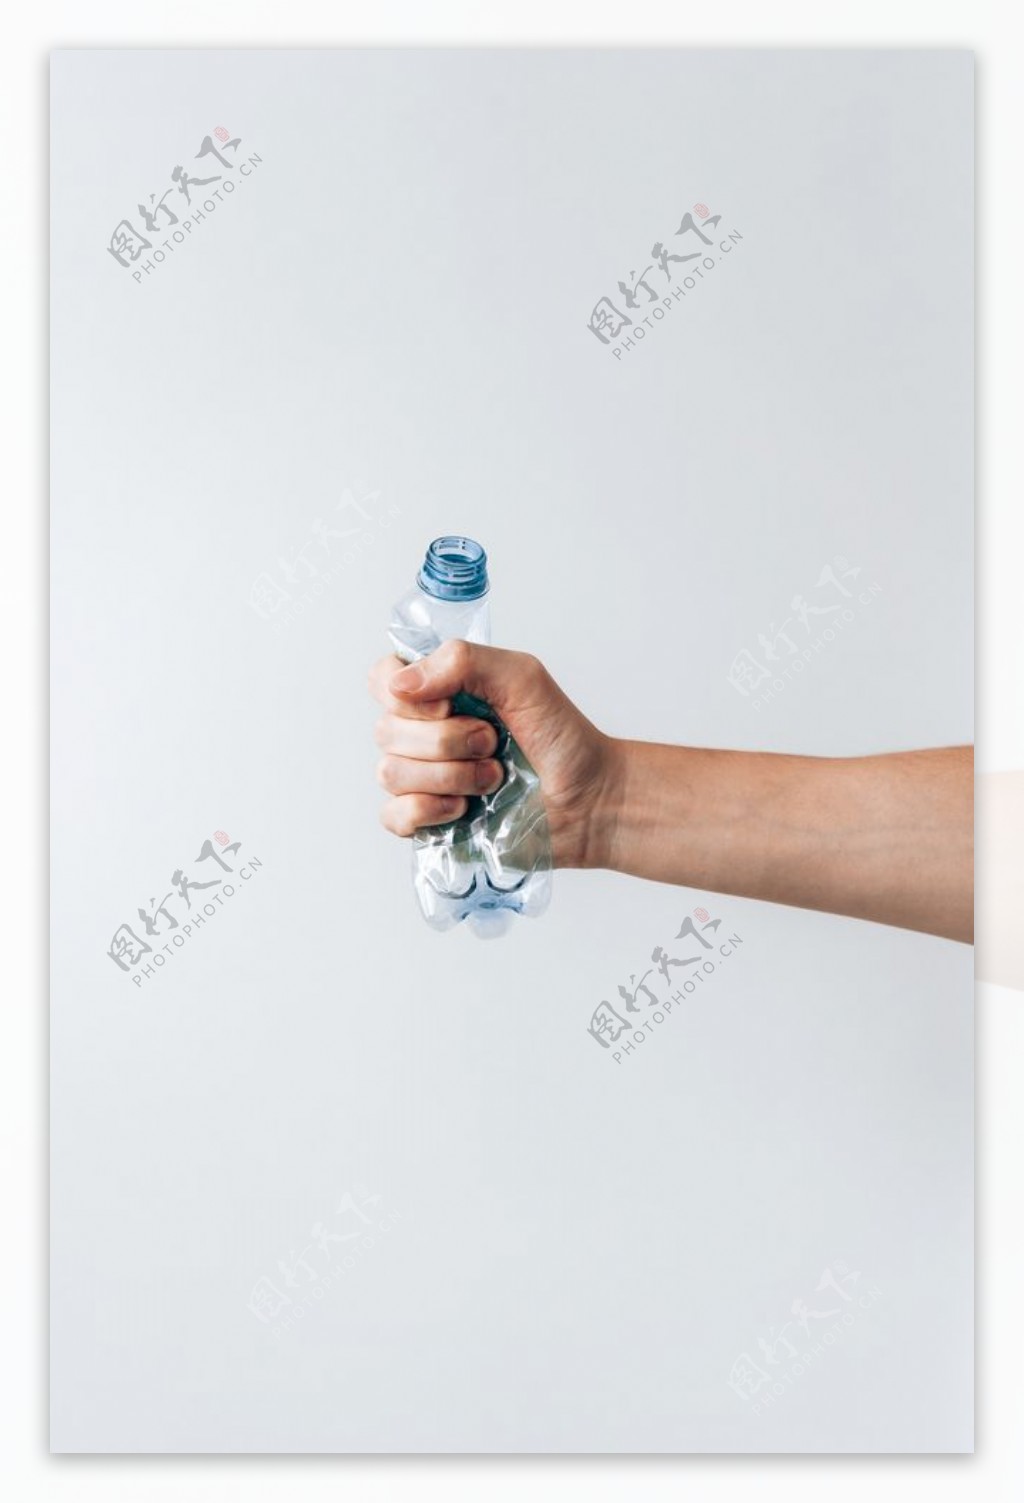 手握塑料瓶子图片